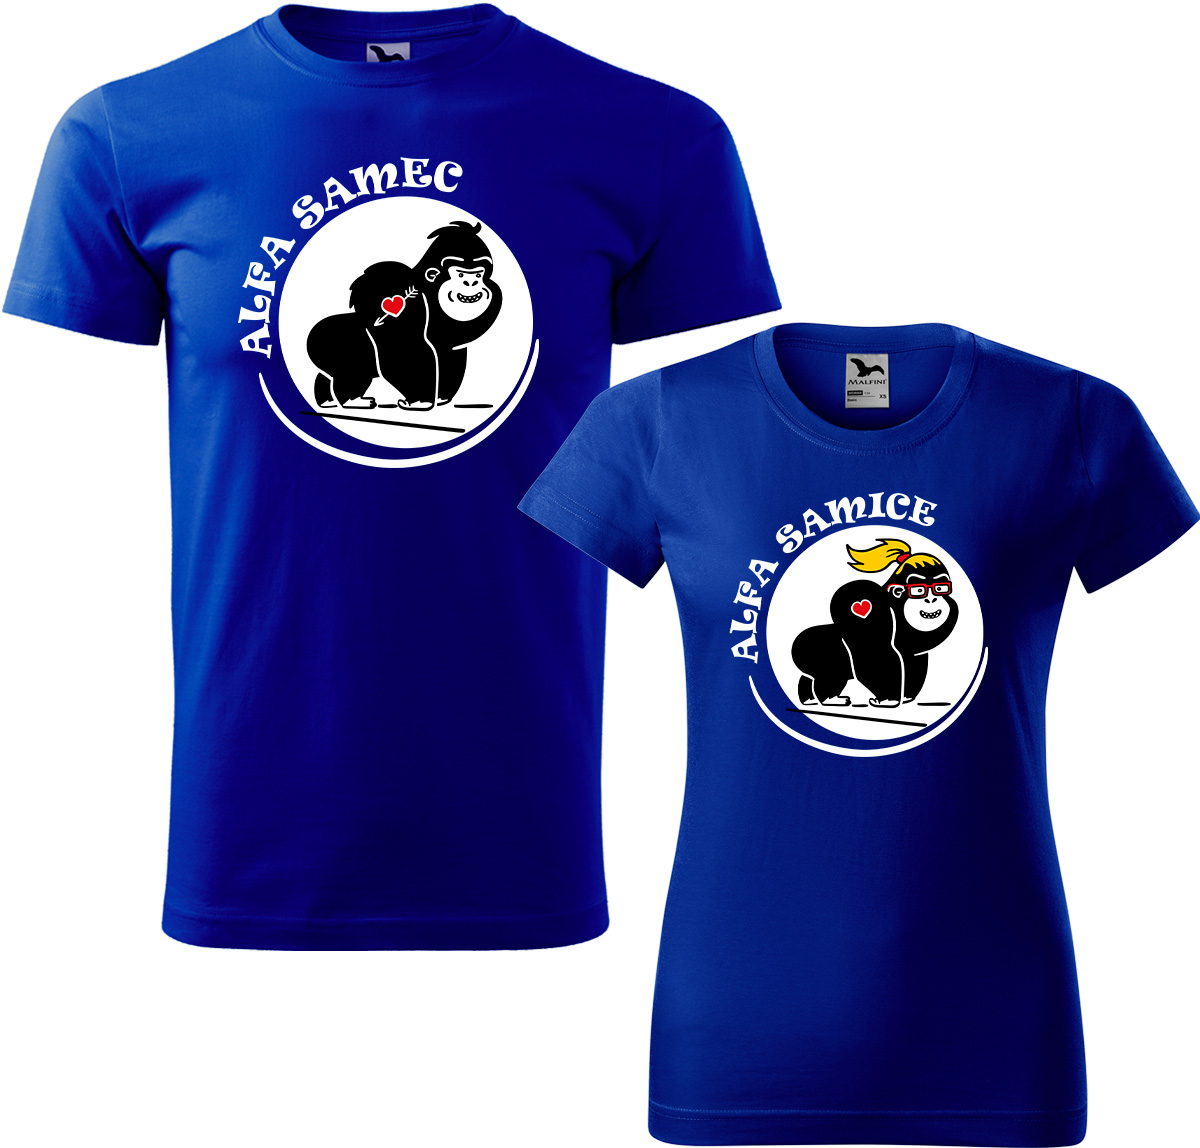 Trička pro páry - Alfa samec a alfa samice Barva: Královská modrá (05), Velikost dámské tričko: XL, Velikost pánské tričko: XL